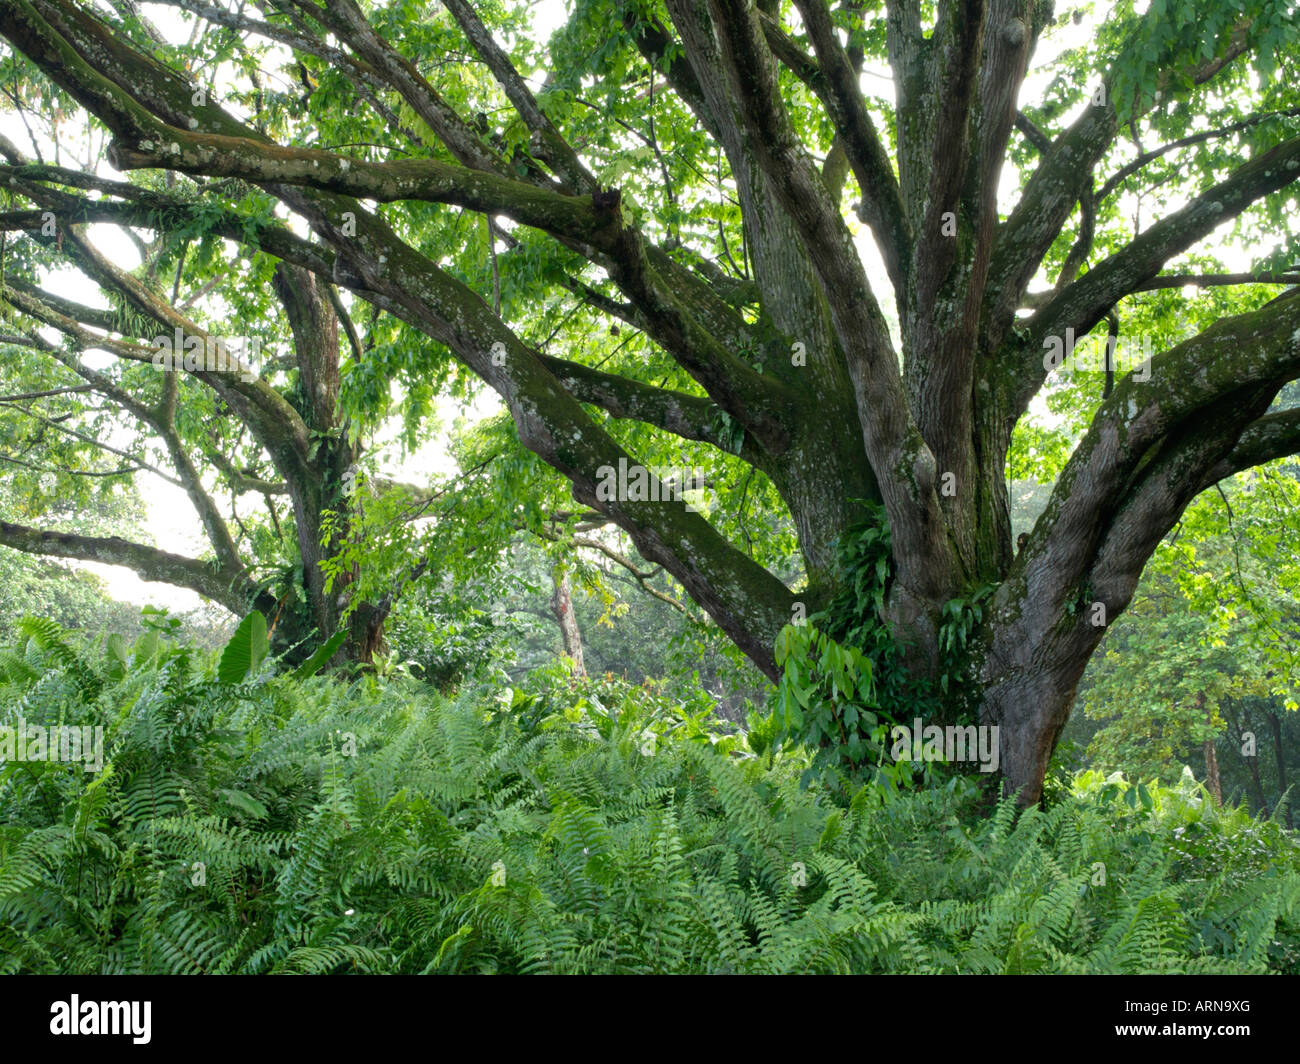 Monkey pod tree (Lecythis apiculata) Stock Photo